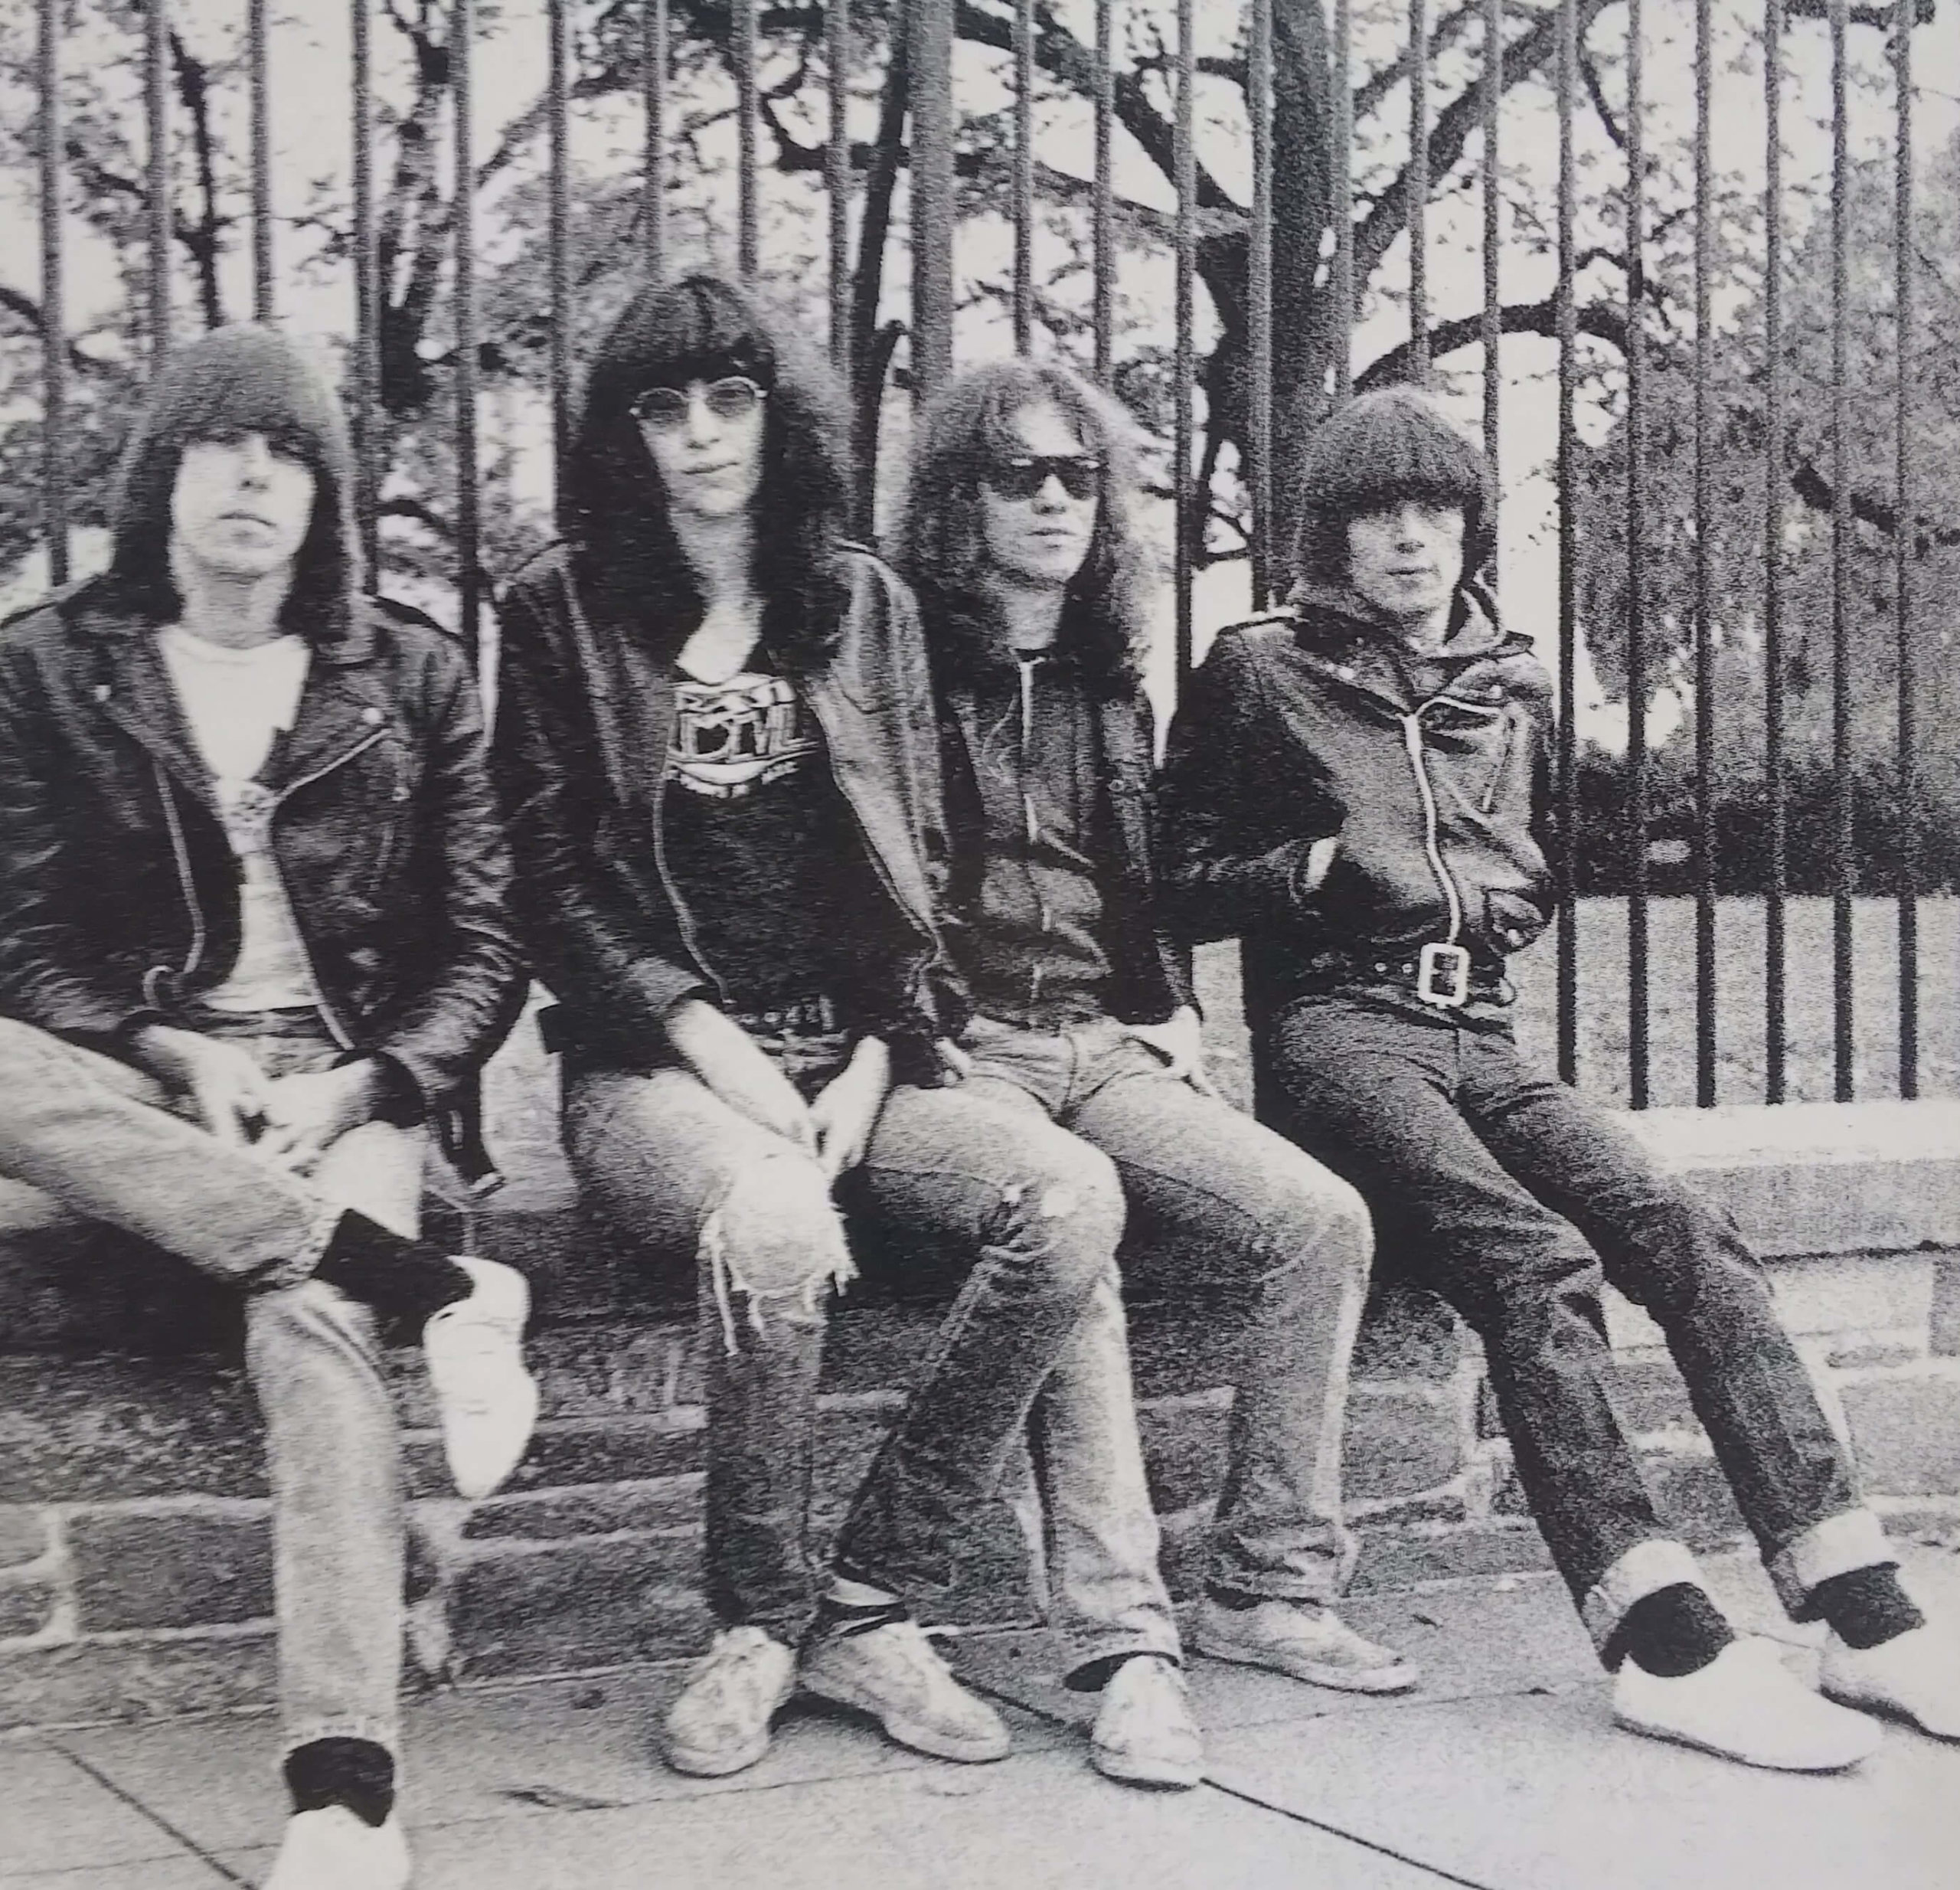 ラモーンズ Ramones のおすすめ名盤アルバム 名曲を紹介 ロック解説 ロック名盤のすすめ